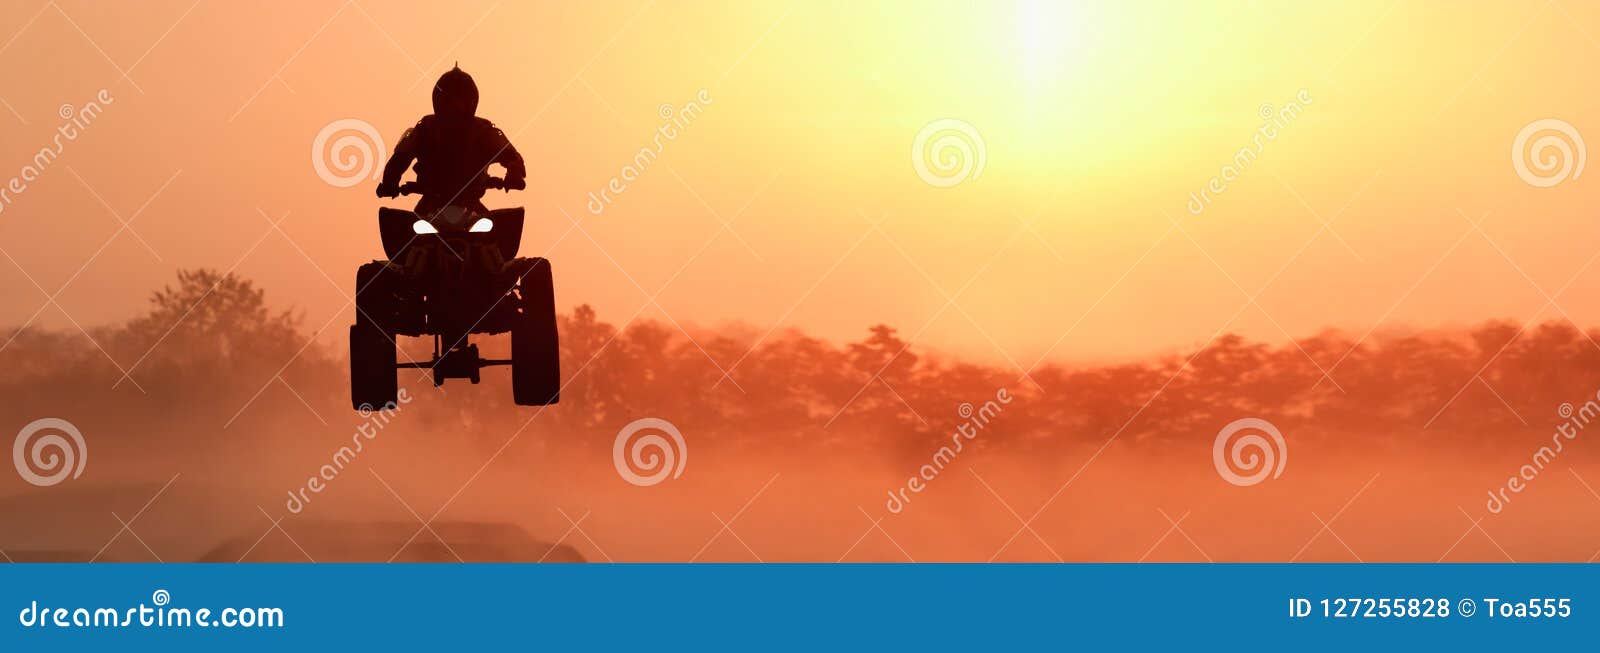 silhouette atv or quad bikes jump in sunset.